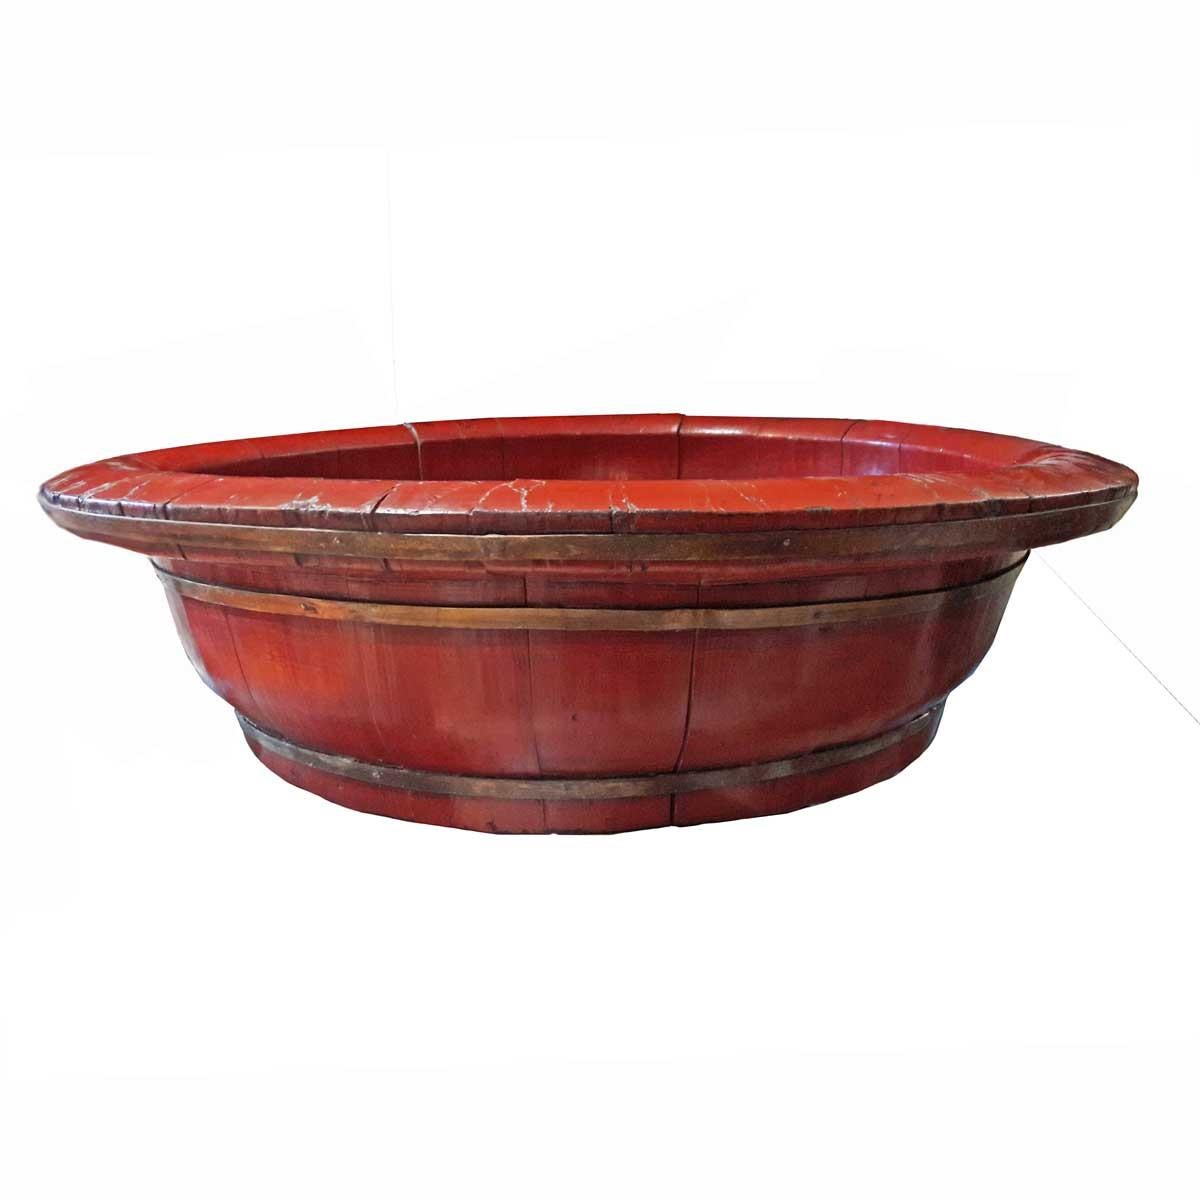 Großes chinesisches Becken oder Schale aus Pfirsichholz, rot lackiert und mit geschmiedeten Bronzestützen, um 1880.